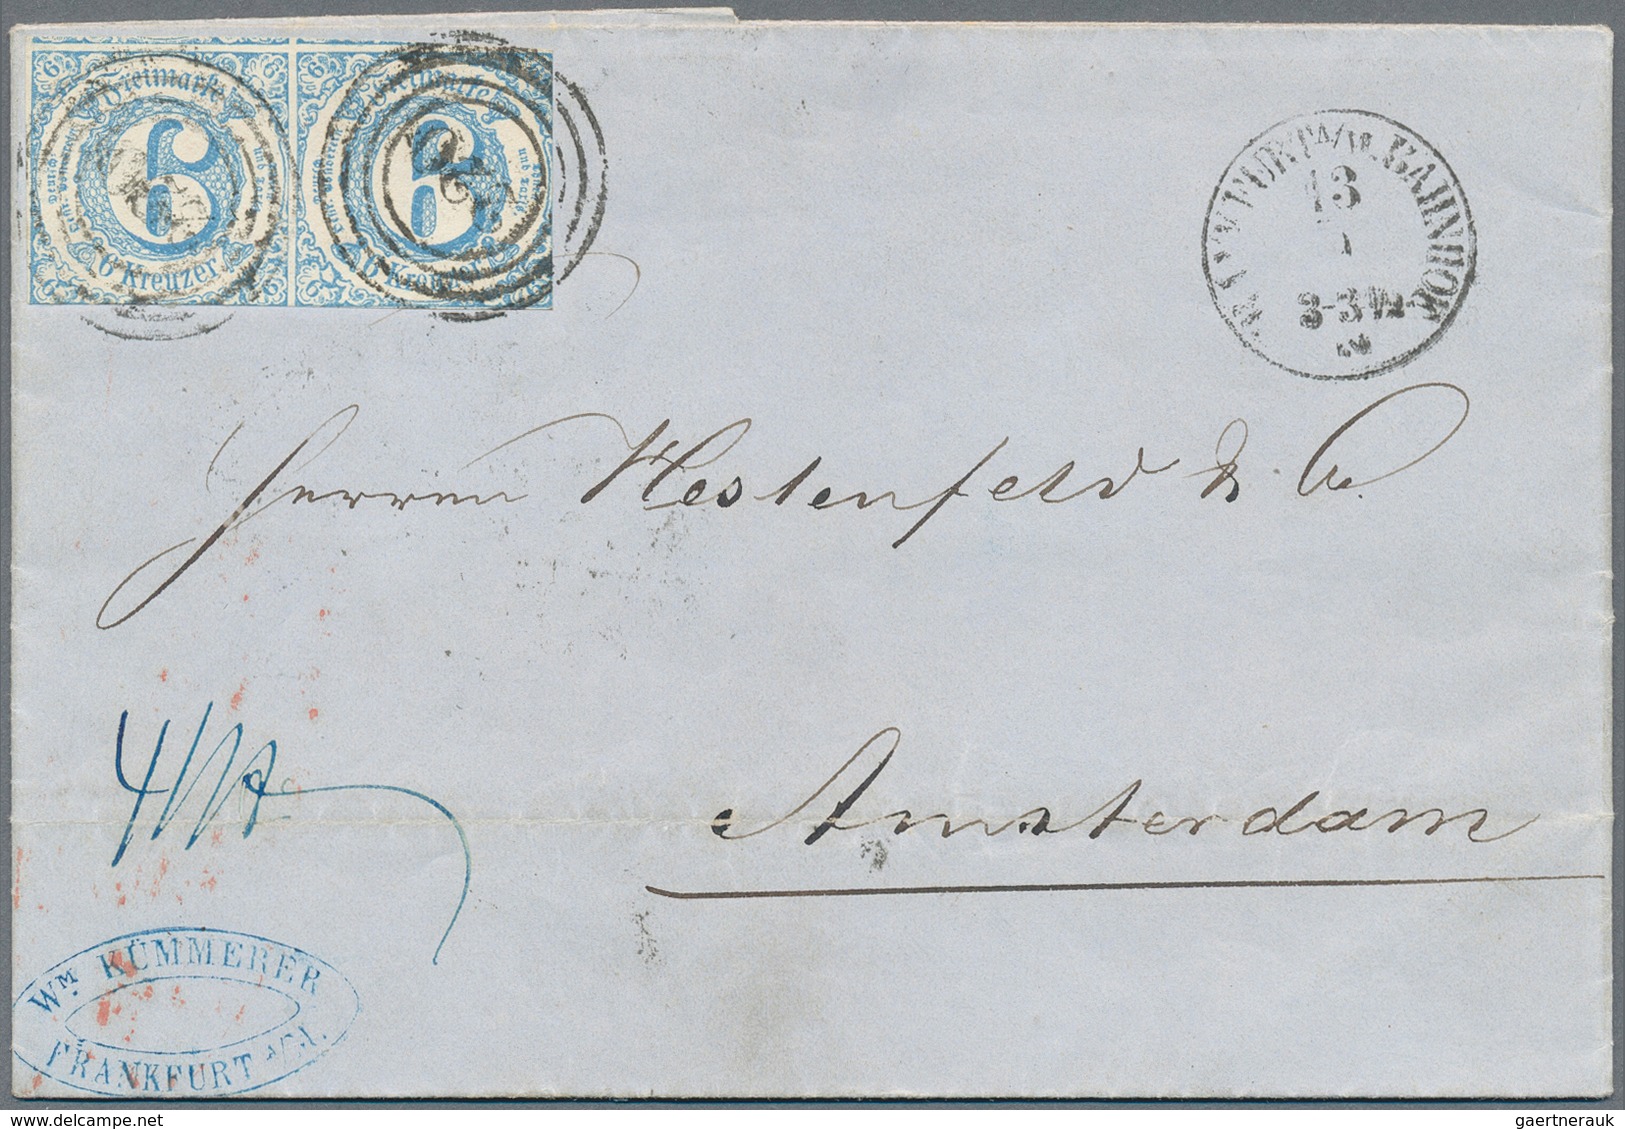 Thurn & Taxis - Marken und Briefe: 1853/1866 (ca.), abwechslungsreicher Posten von rund 140 frankier